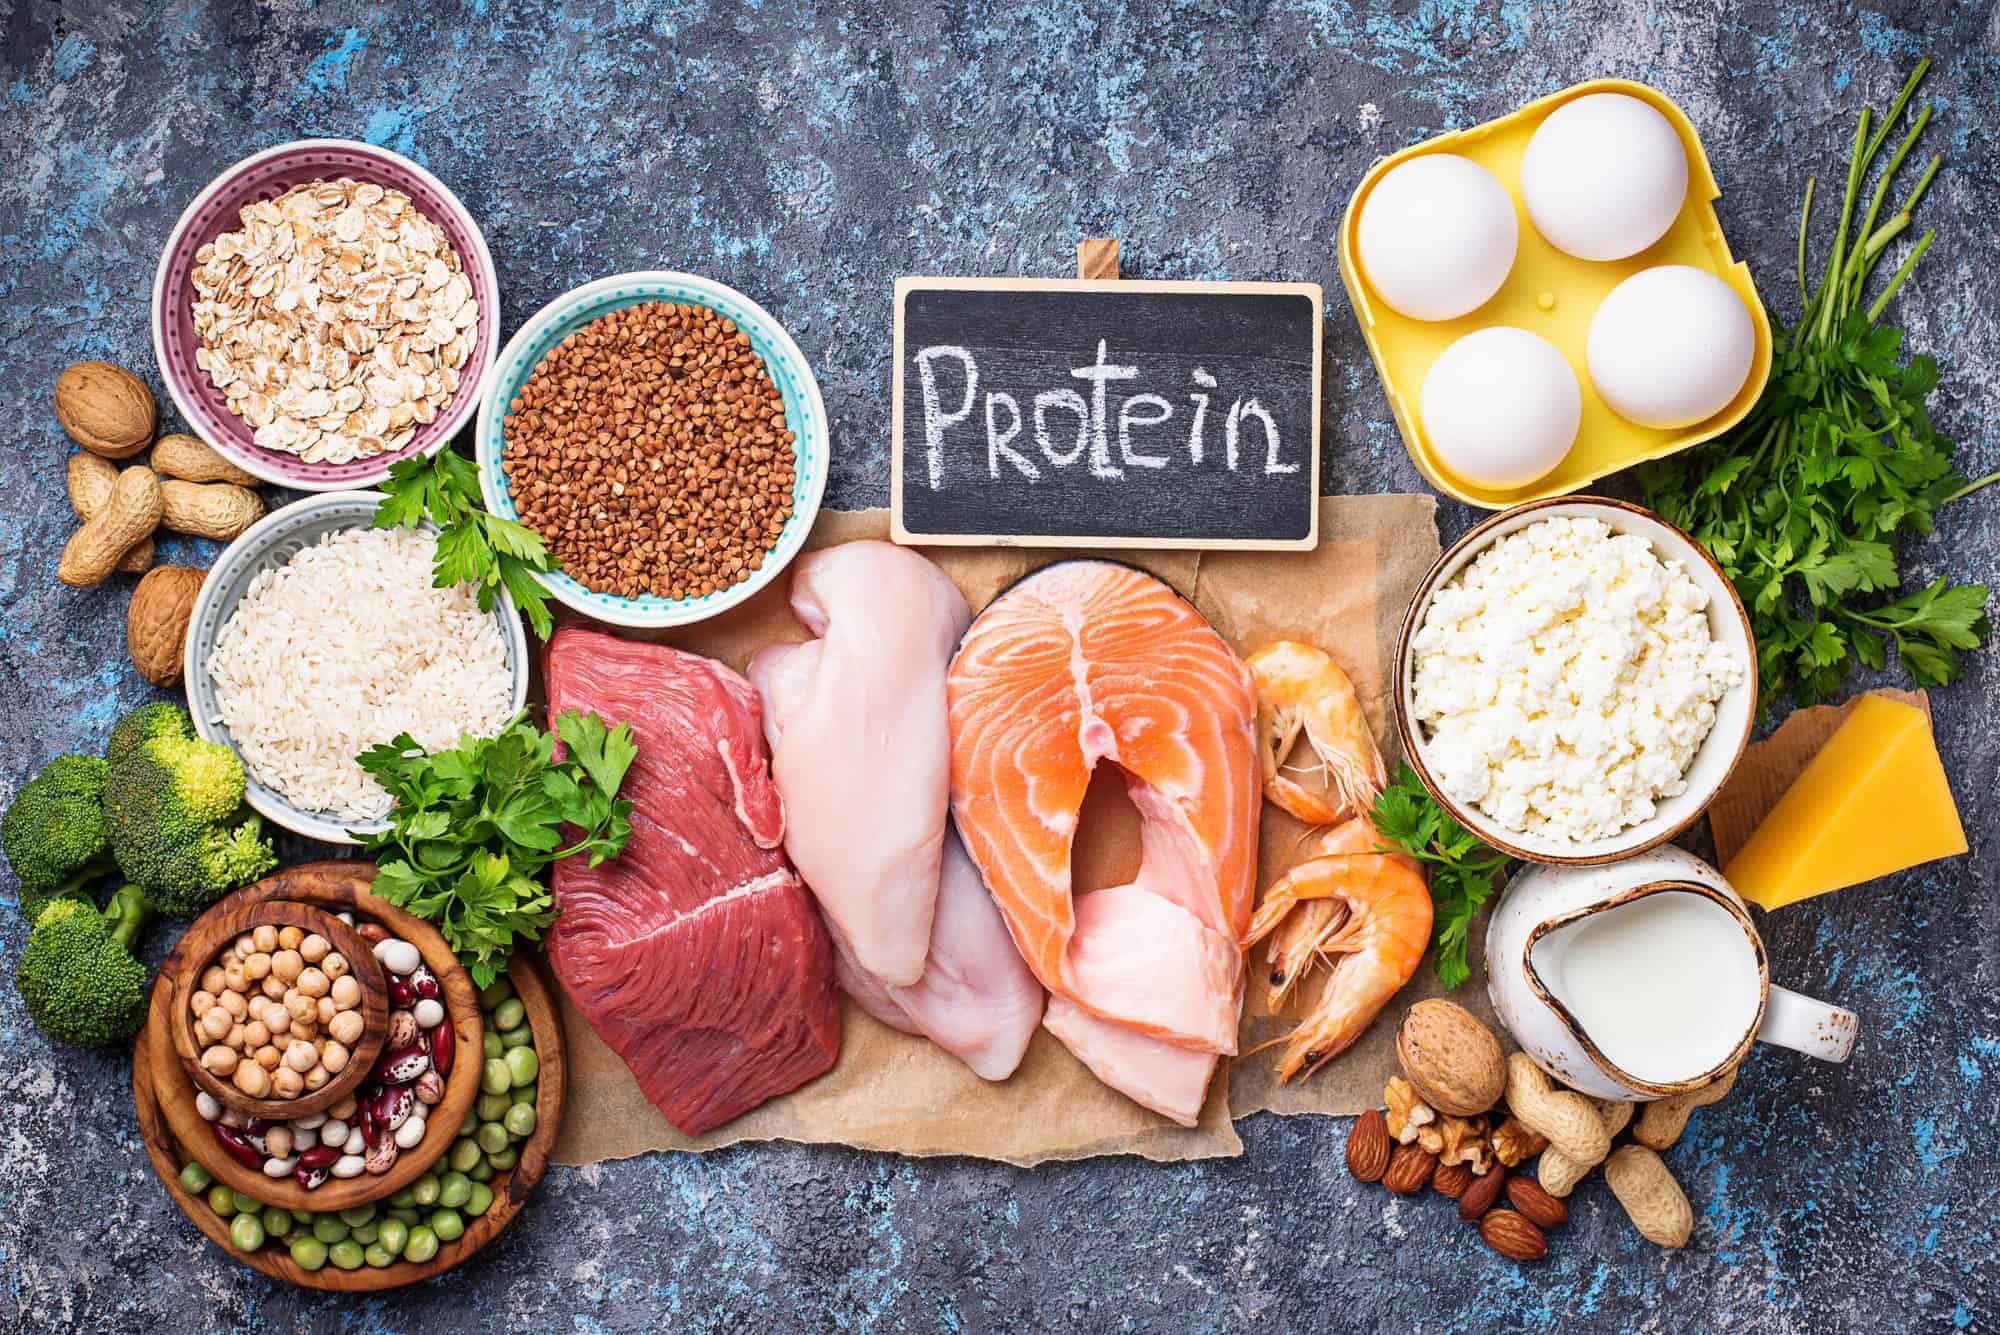 أهم الأطعمة الغذائية التي تحتوي على البروتين بنسب أعلى من البيض